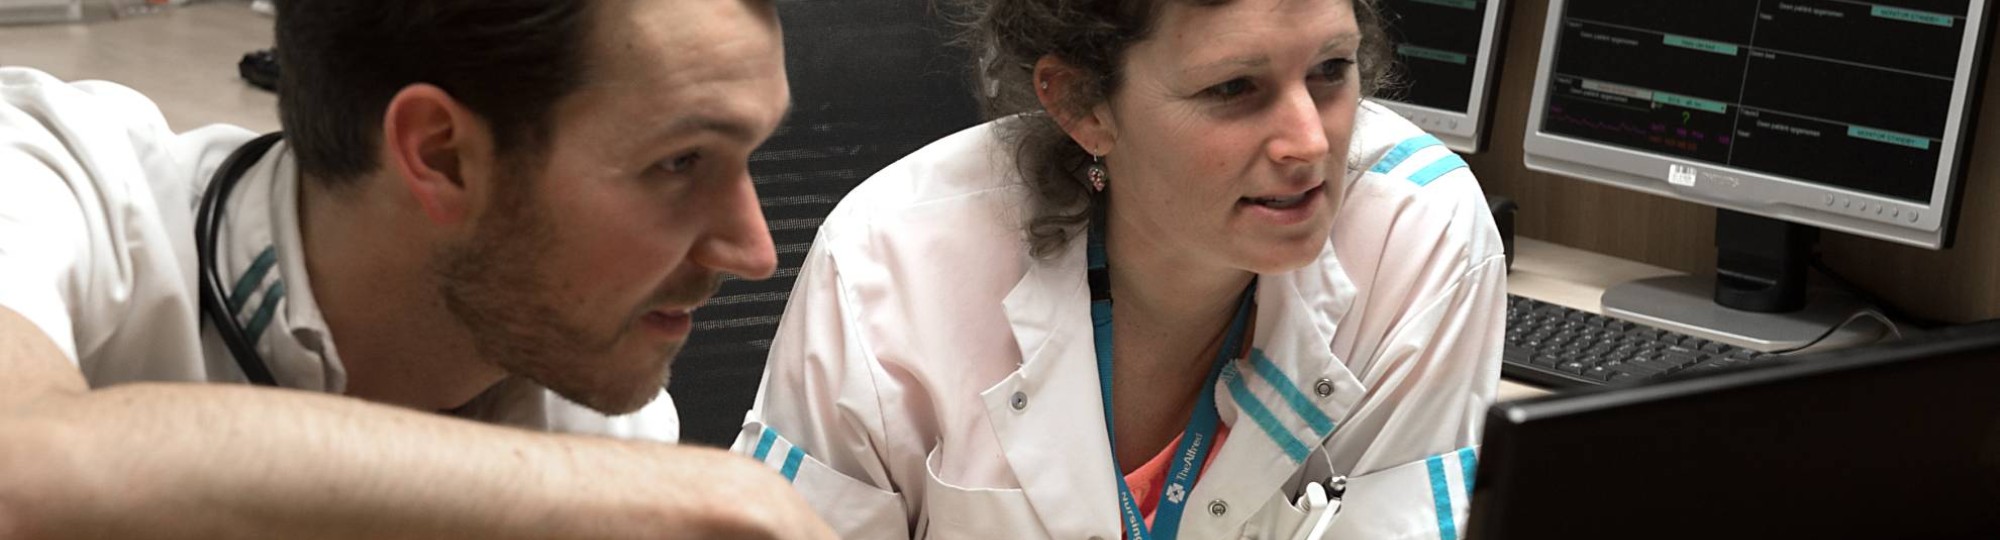 arts en een verpleegkundige overleggen over medisch beleid naar aanleiding van beeld op de hartmonitor